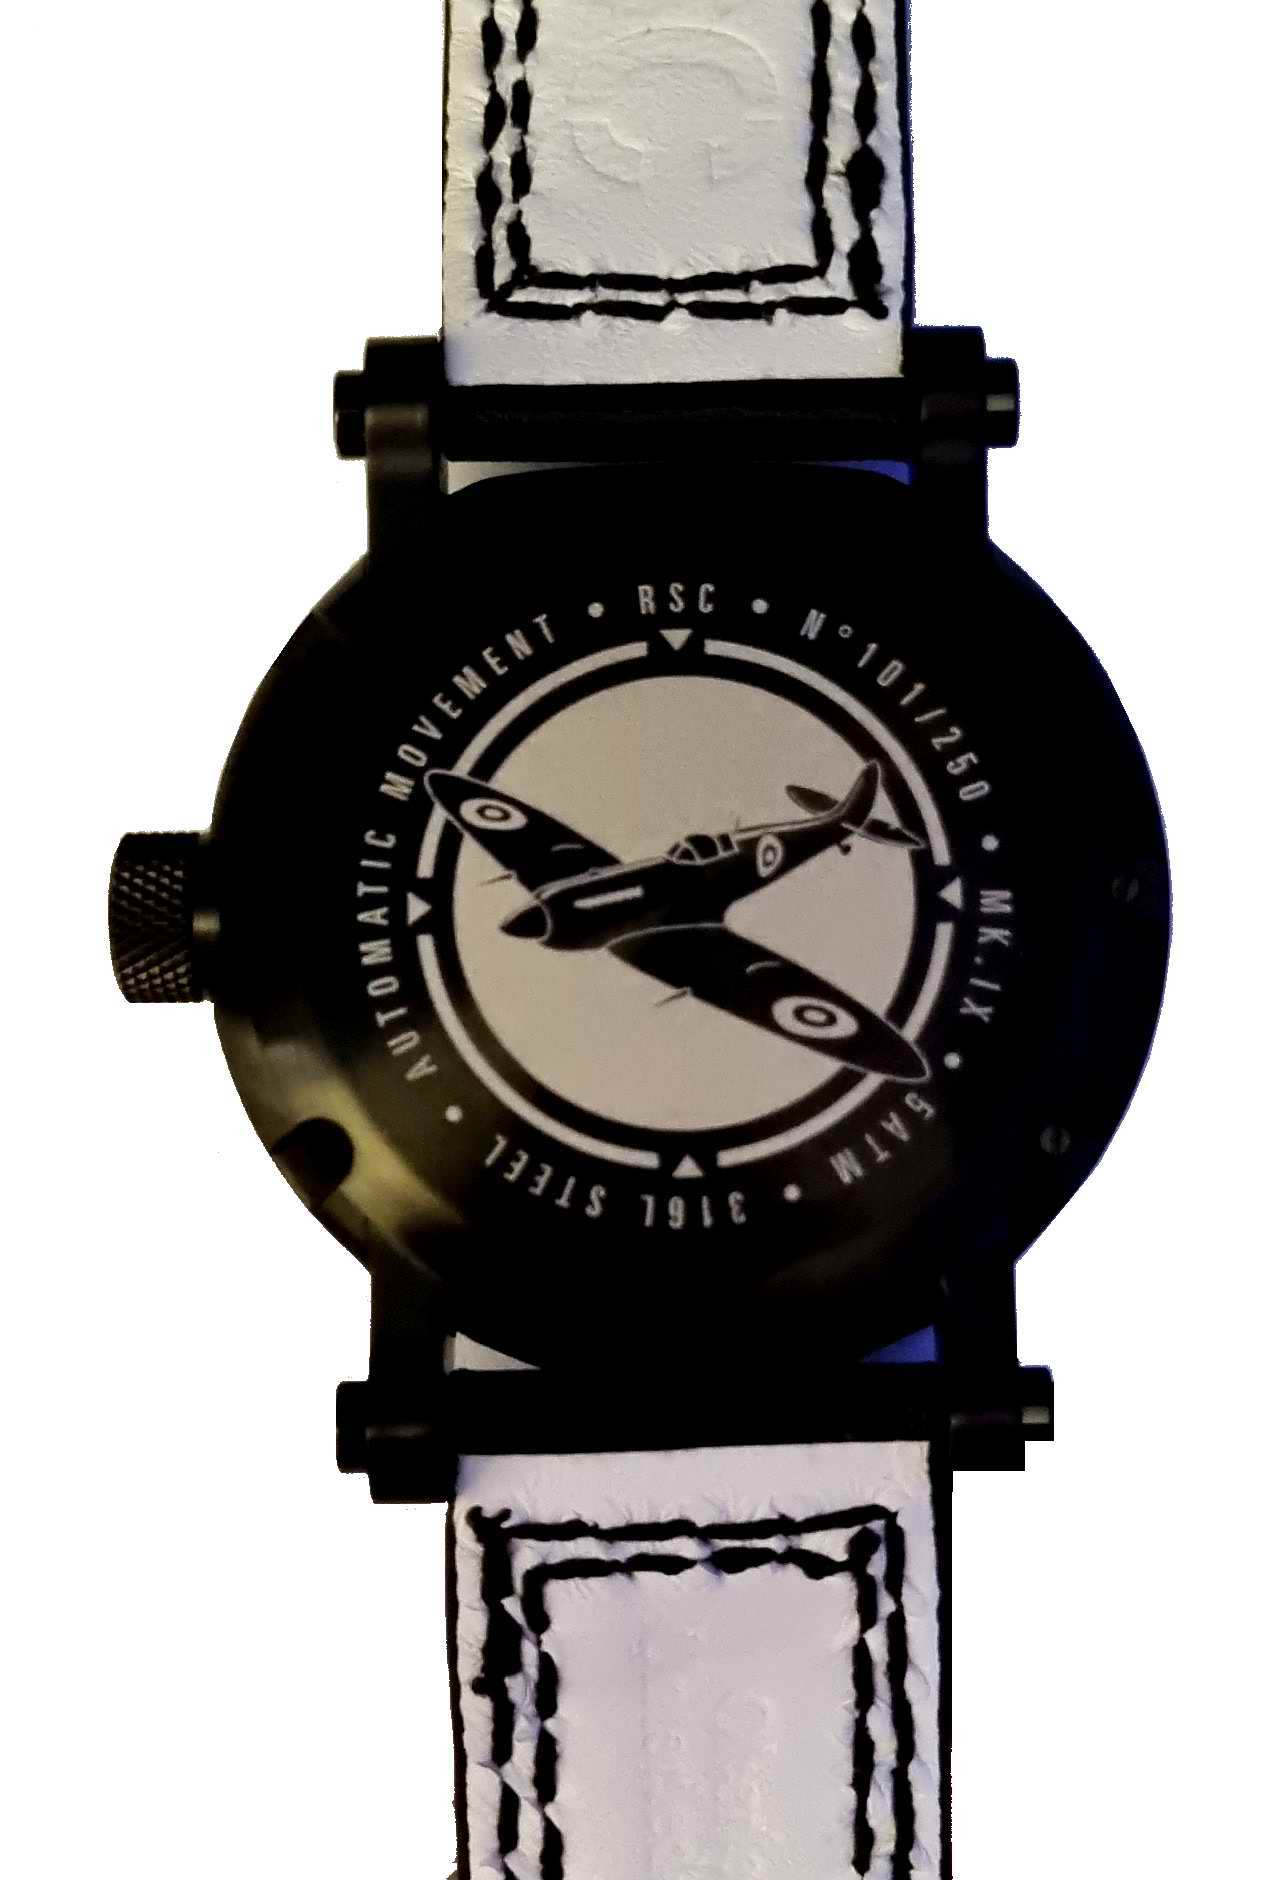 Montre Aviateur Automatique SPITFIRE Mk IX Bracelet Cuir RSC PILOTS WATCHES